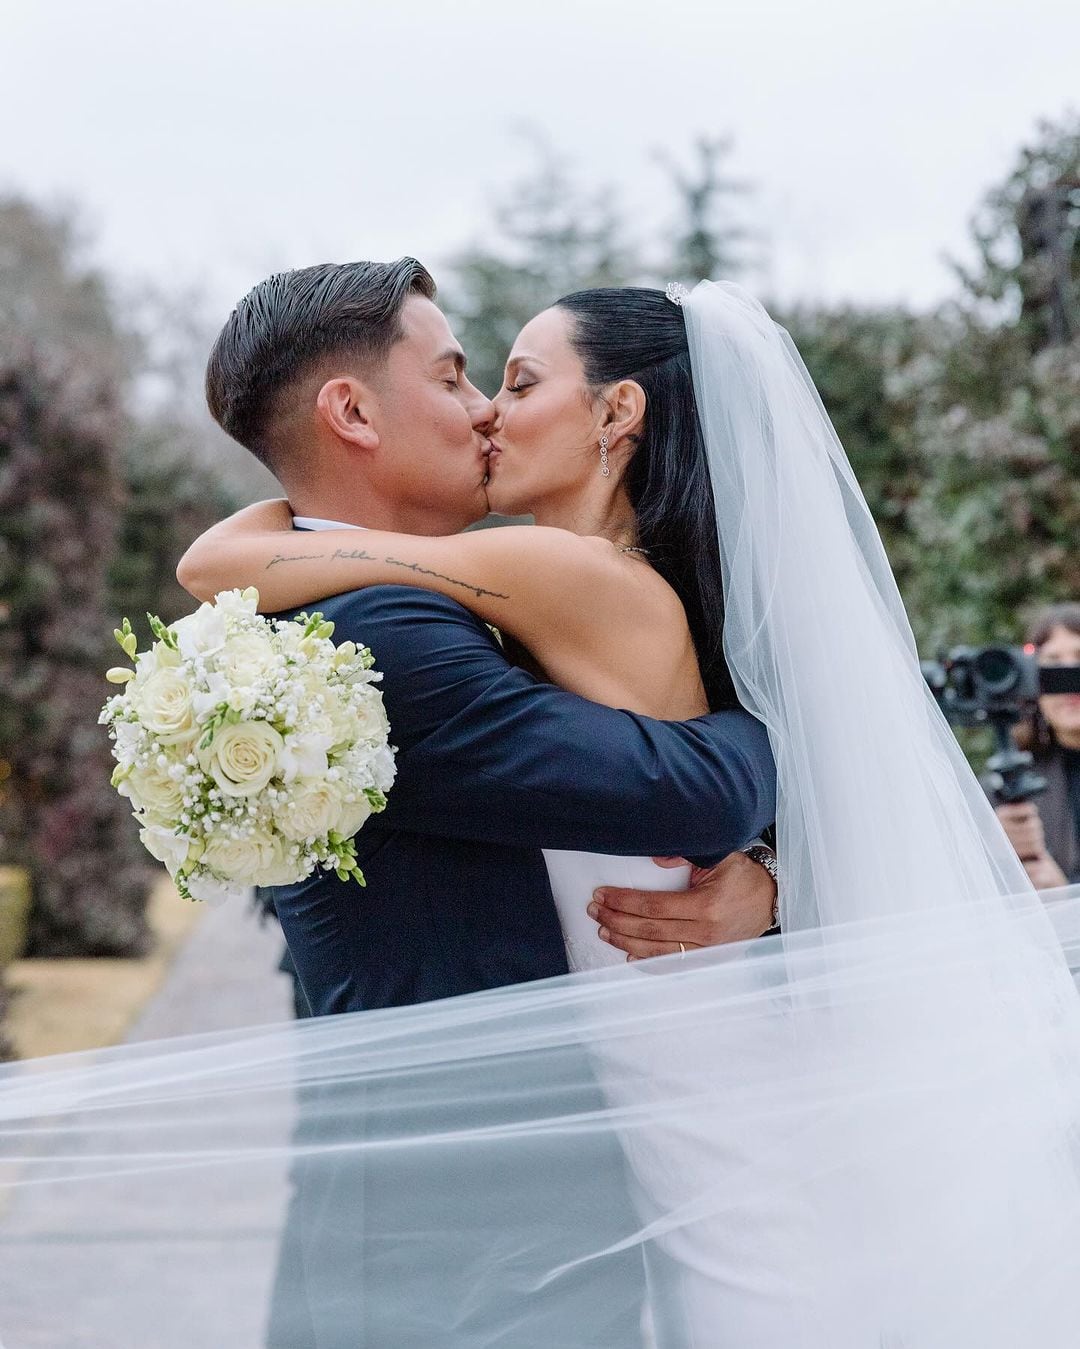 Casamiento de Oriana Sabatini y Paulo Dybala: el beso de los novios